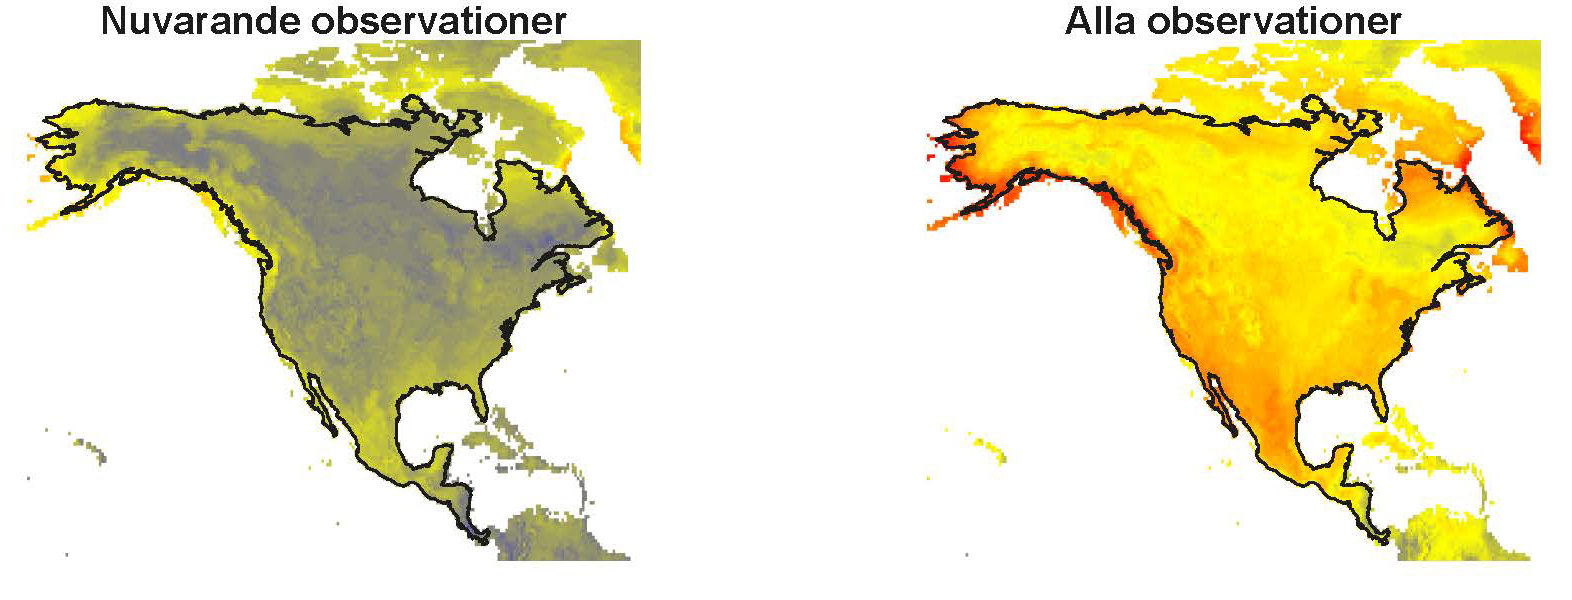 Två kartor över nordamerika som visar olika prognoser om antal stora däggdjur